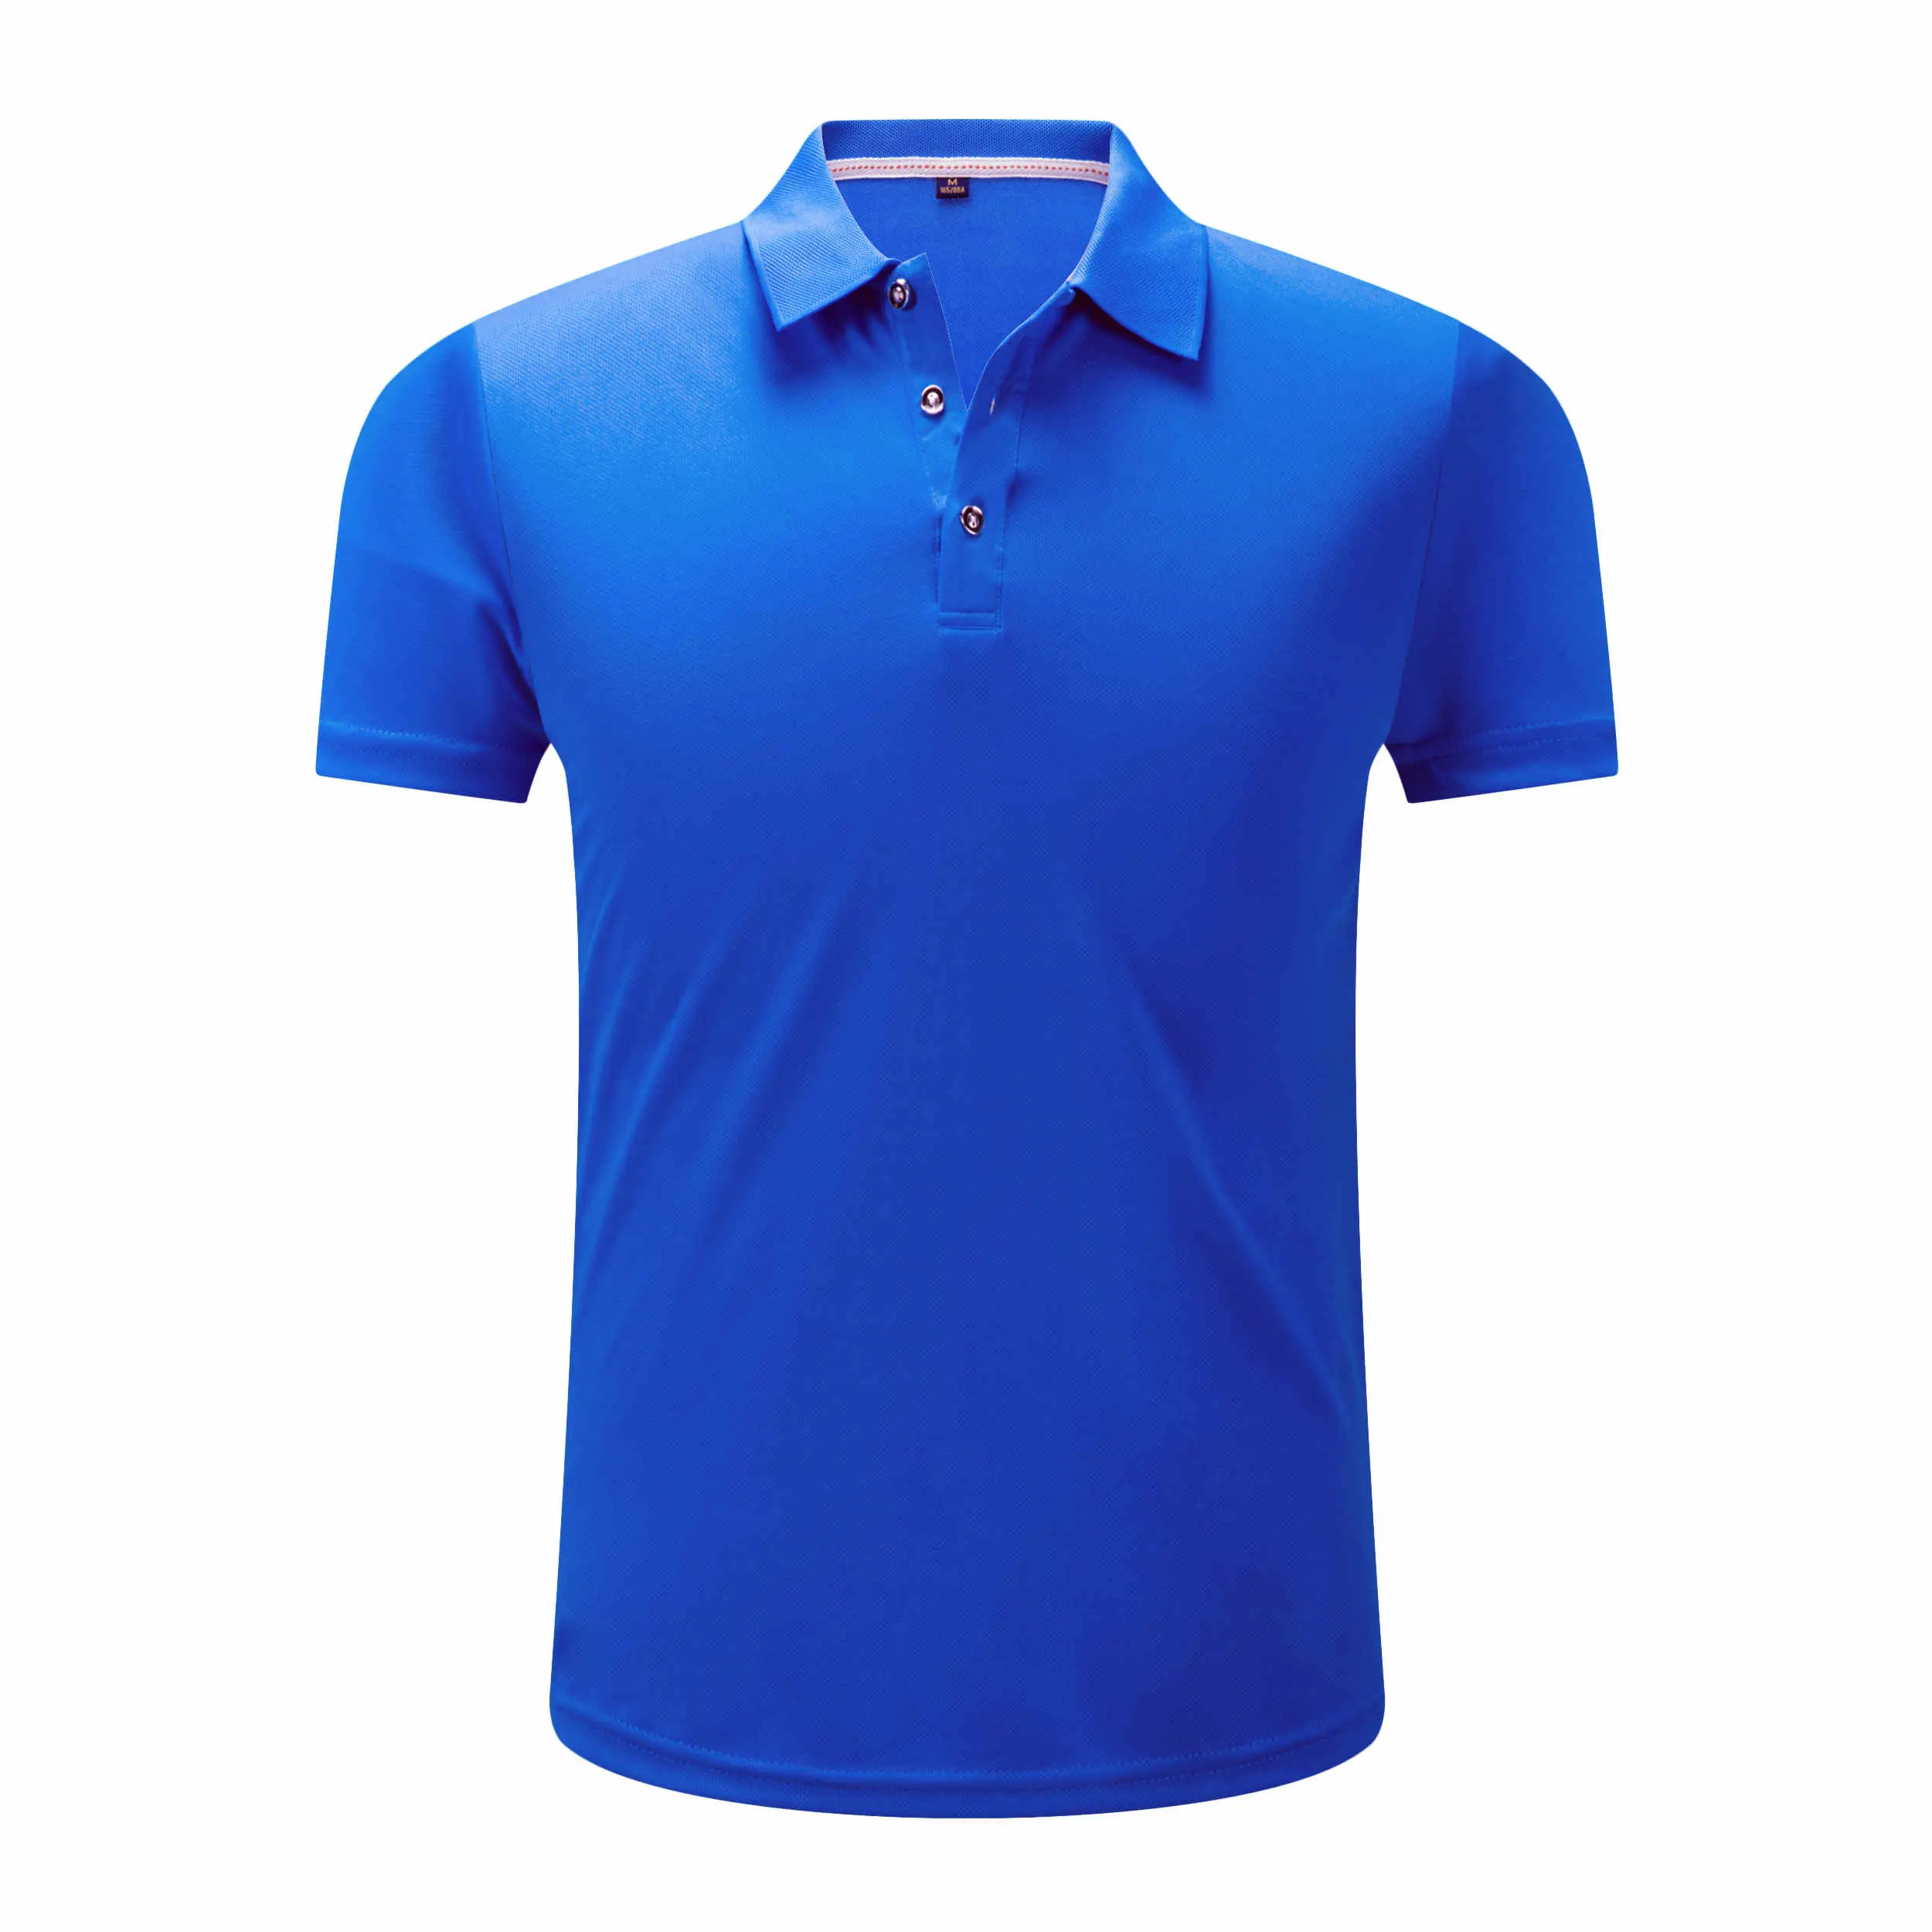 उच्च गुणवत्ता वाले पुरुषों की पोलो टी-शर्ट स्पैन्डेक्स / कॉटन ब्लेंड आरामदायक सांस लेने योग्य और टिकाऊ बुना हुआ कपड़ा शर्ट रॉयल ब्लू टीशर्ट